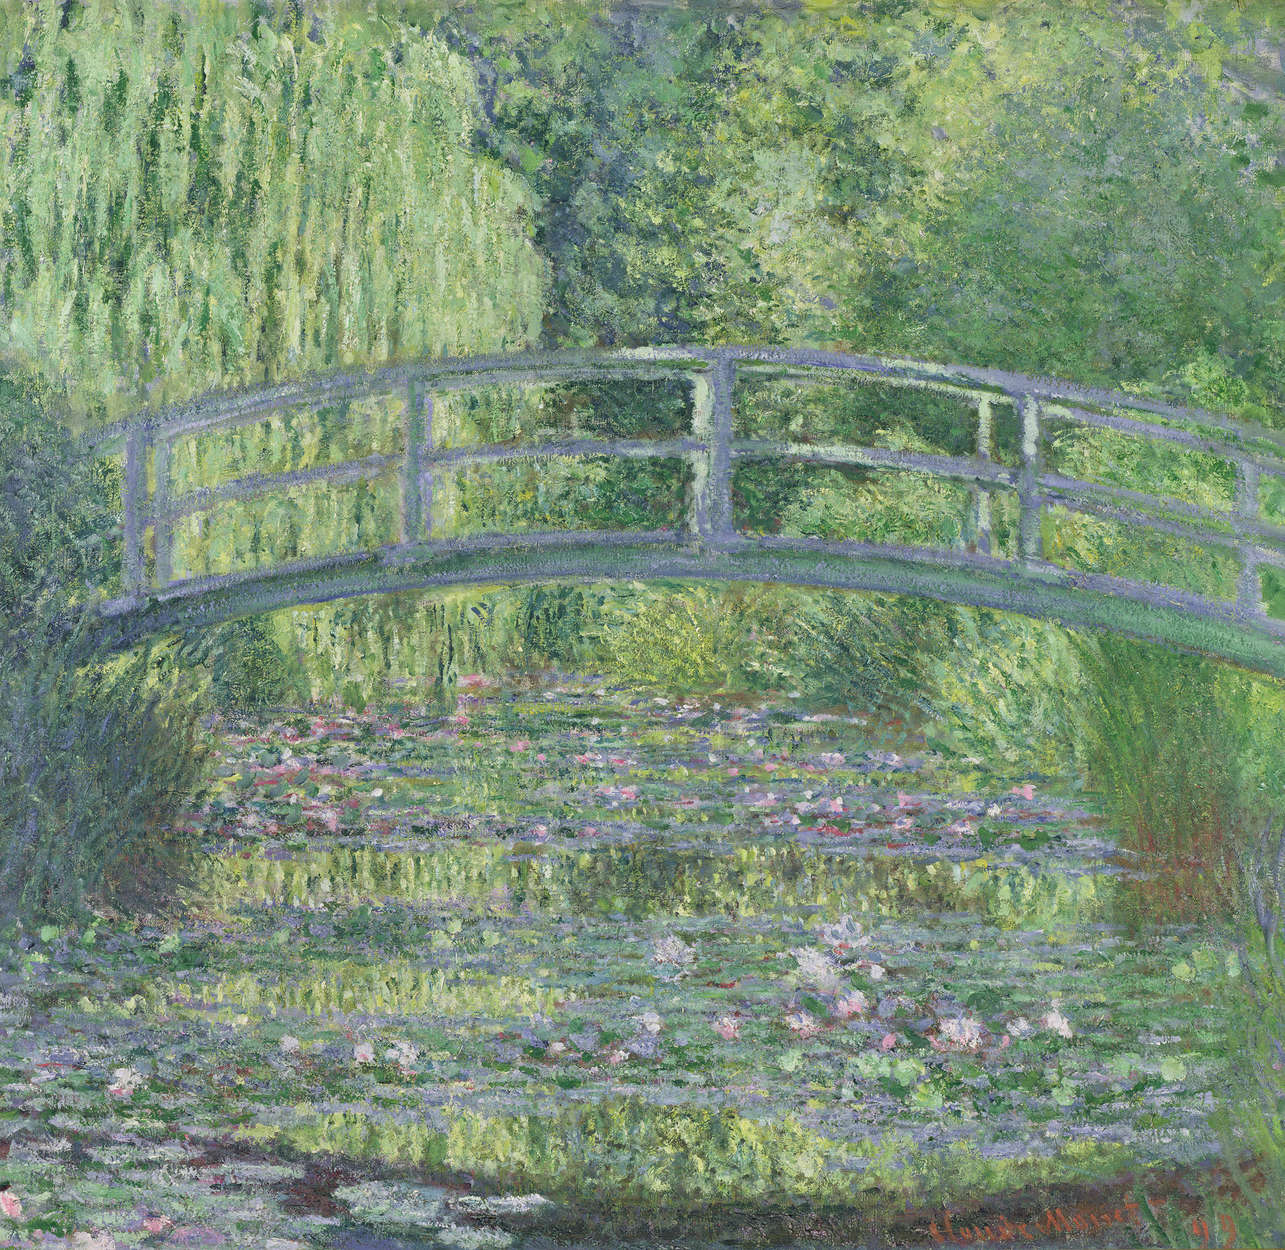             Stagno delle ninfee: armonia verde", murale di Claude Monet
        